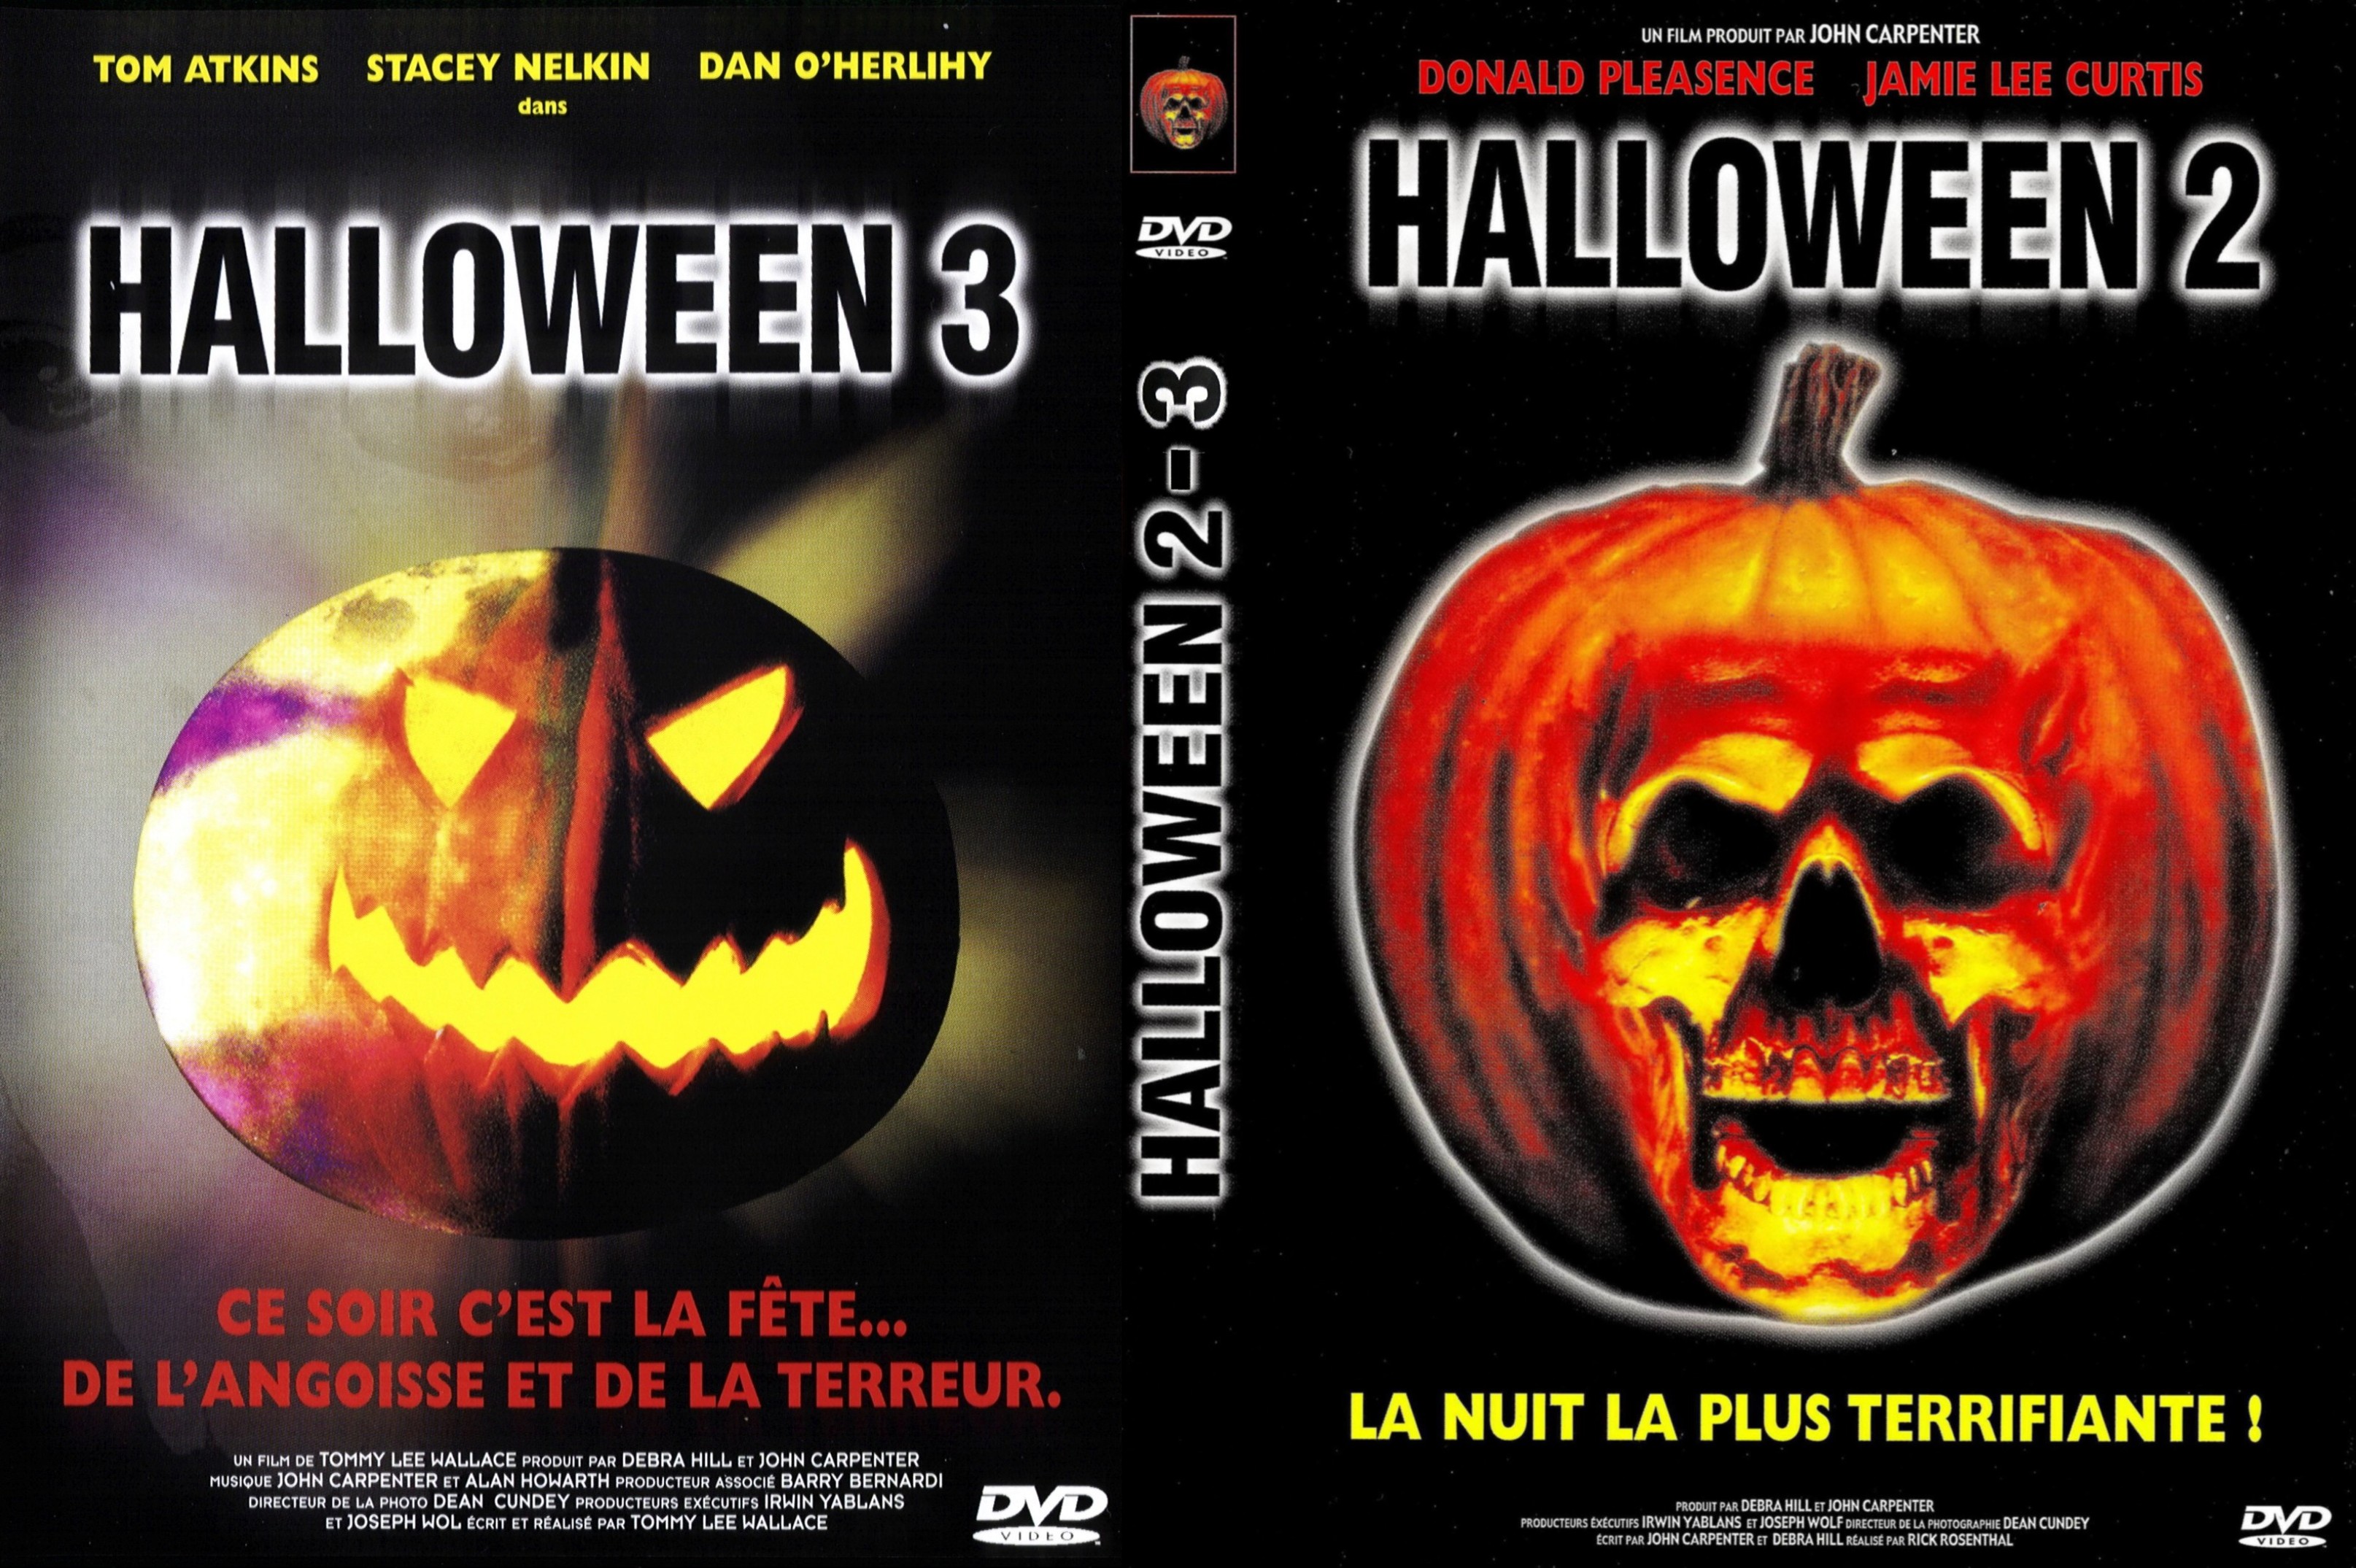 Jaquette DVD Halloween 2 et 3 custom